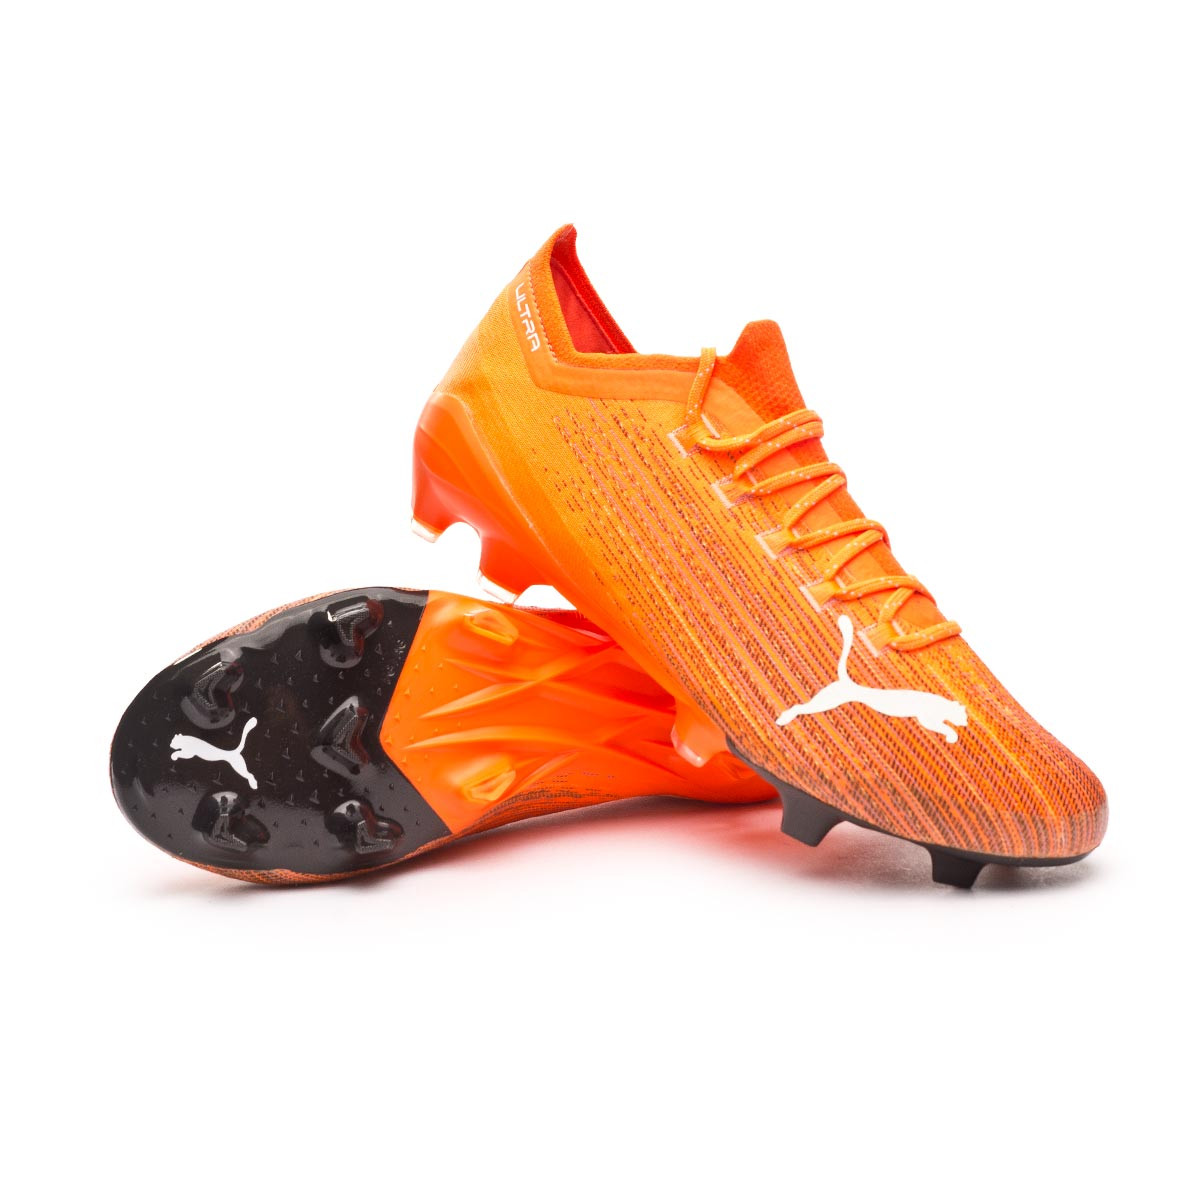 botas de futbol puma naranjas